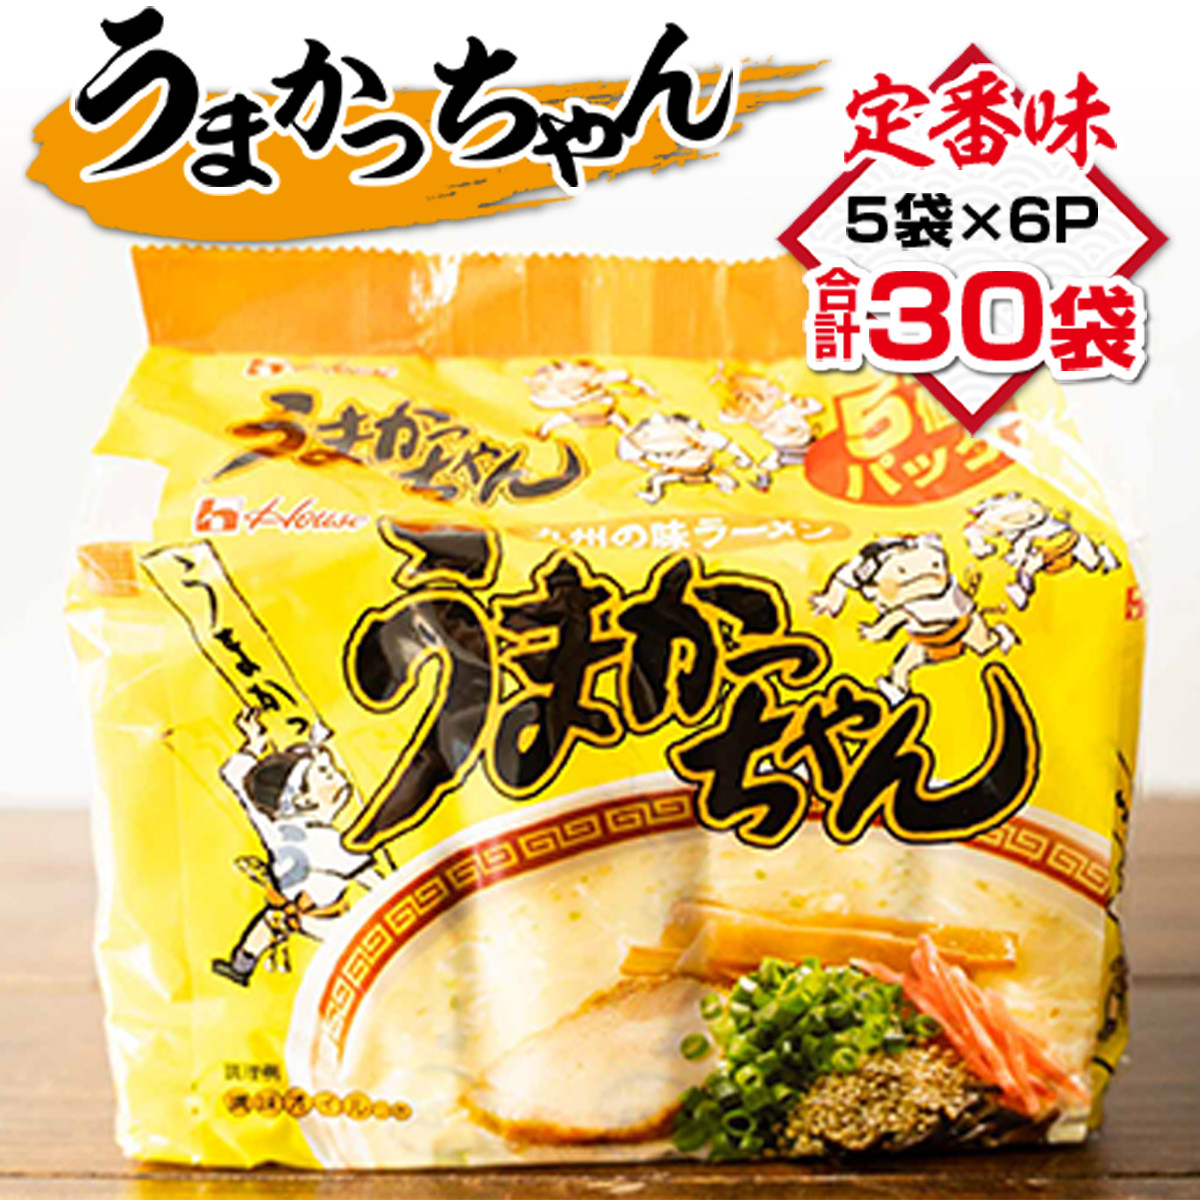 ふるさと納税 佐賀県 基山町 焼豚ラーメン・カップ麺詰合せ 計24食入